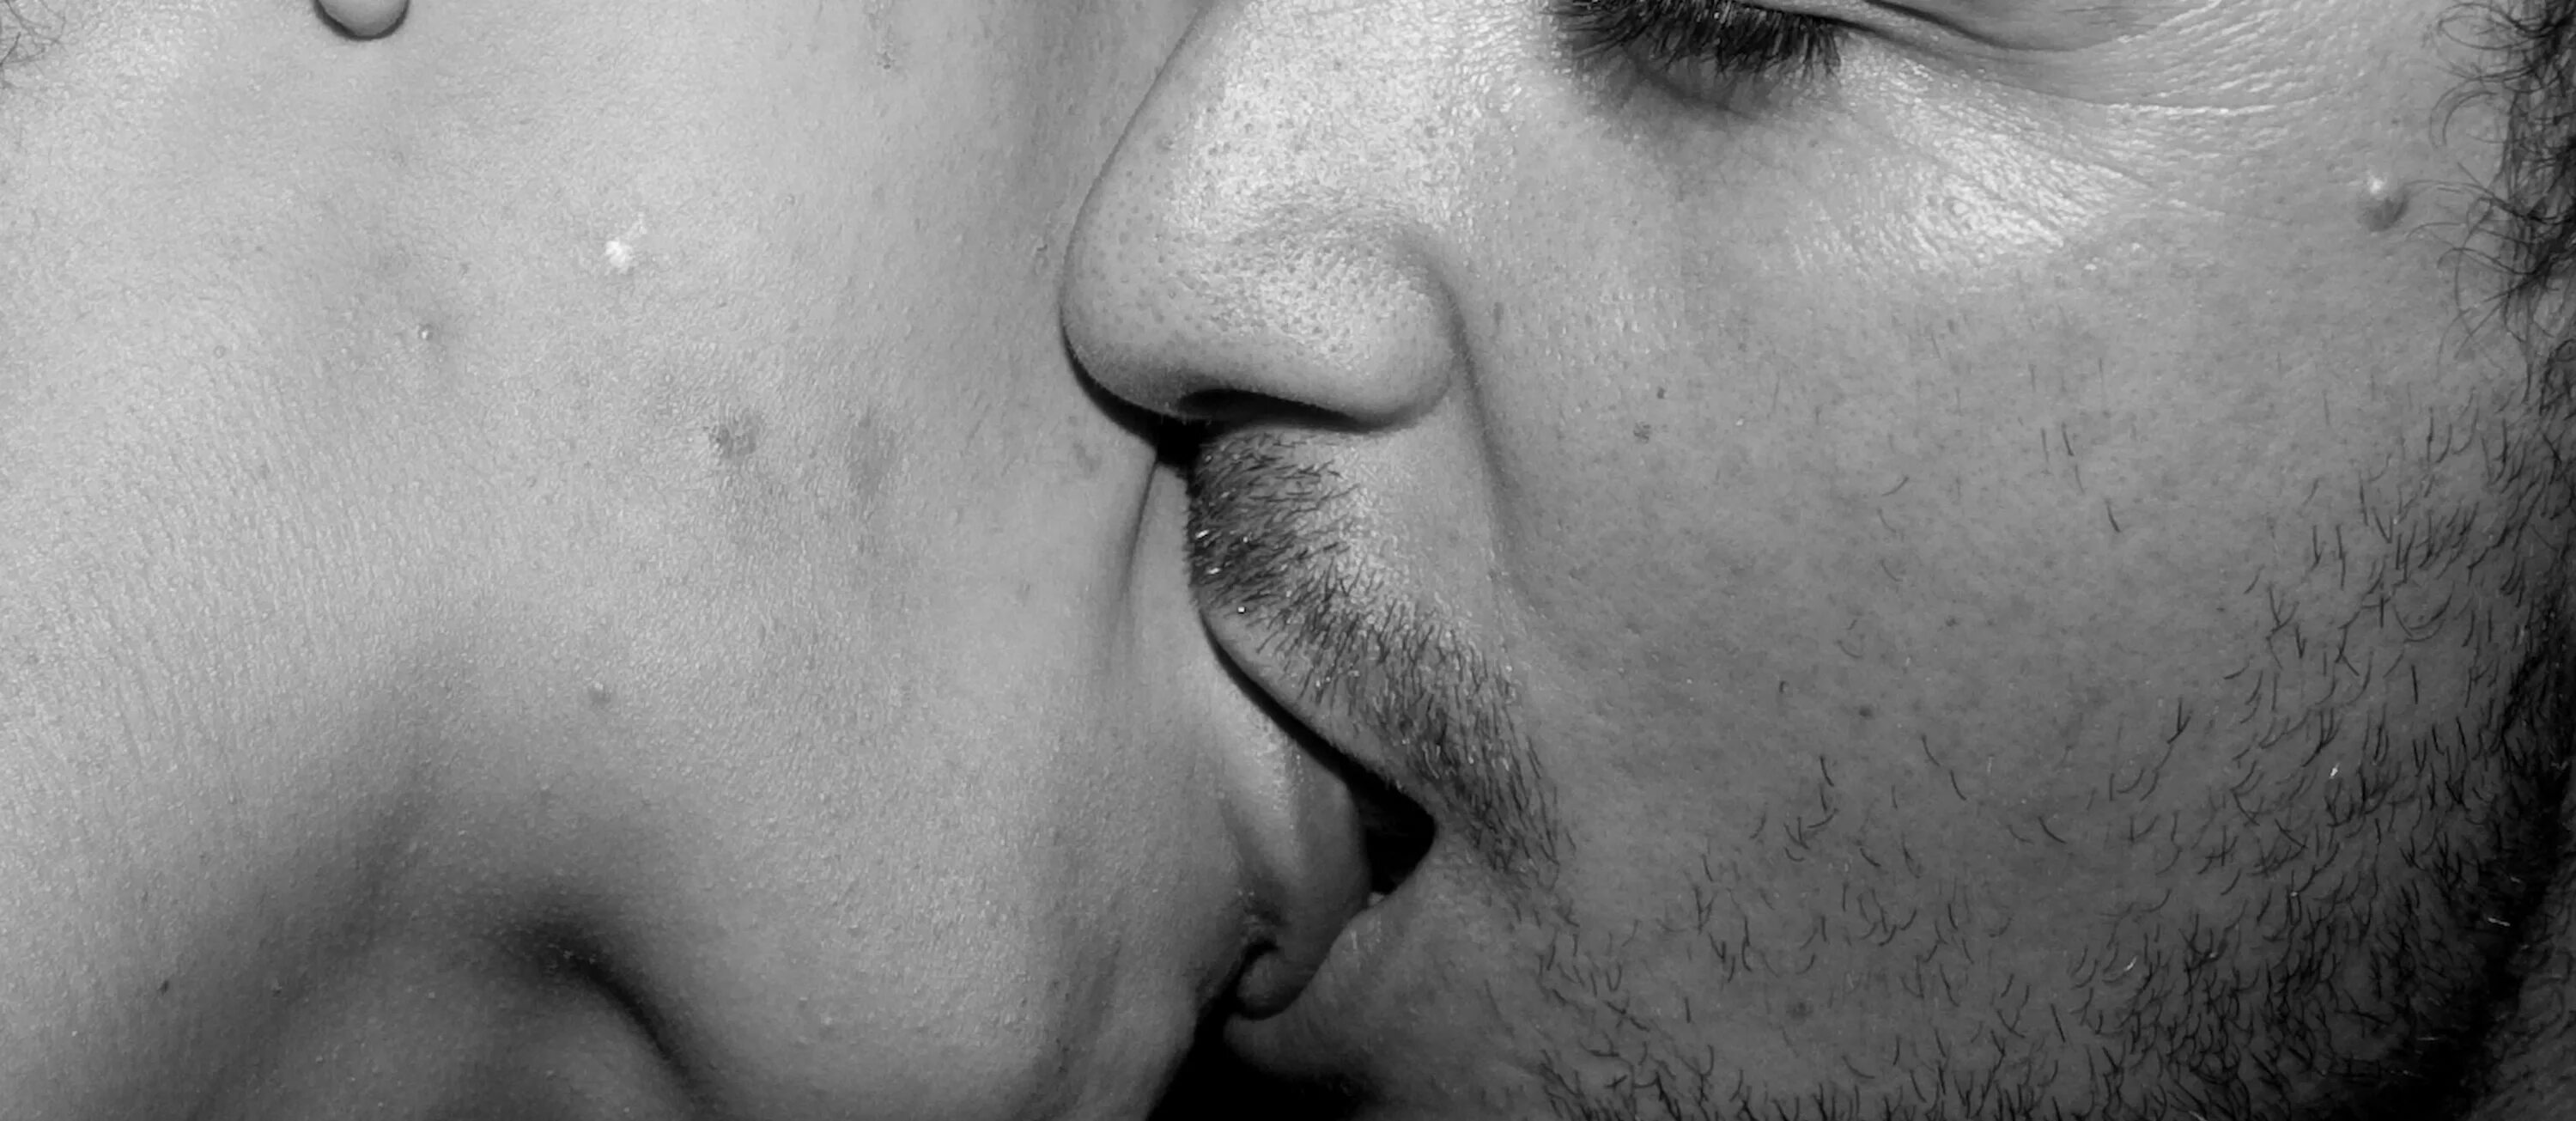 Поцелуй вблизи. Поцелуй крупно. Мужской поцелуй. Поцелуй с языком.